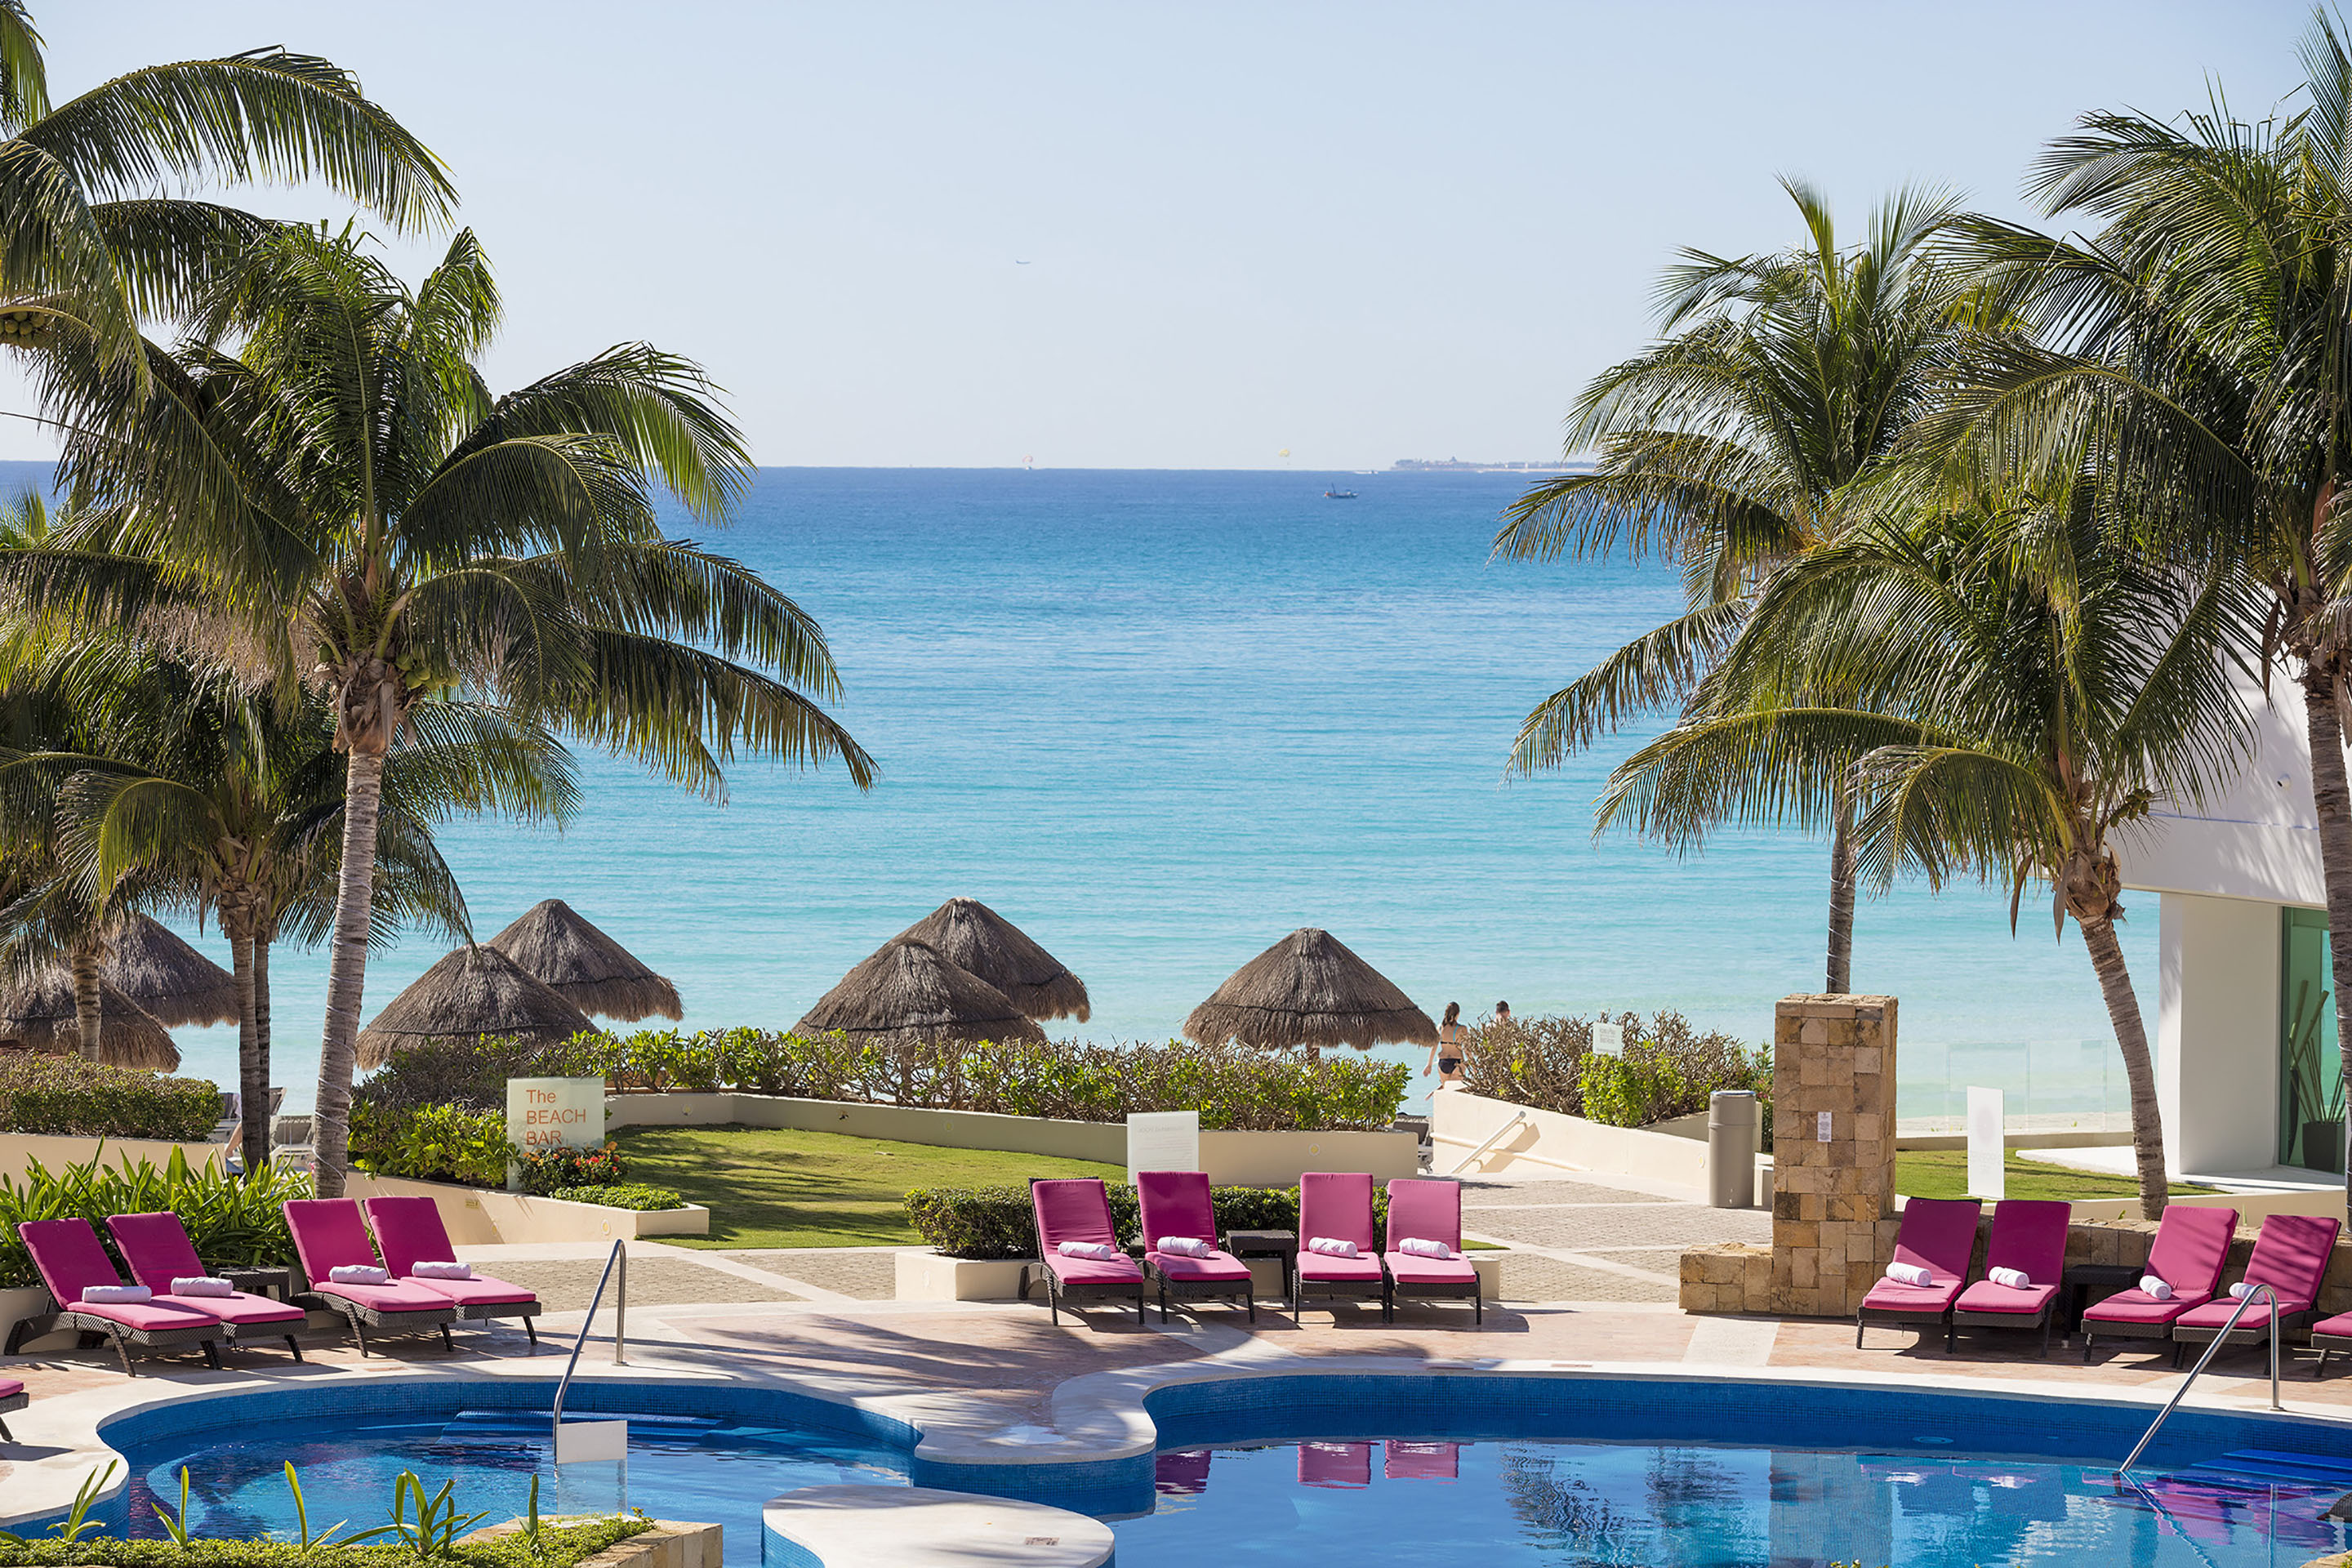 Krystal Grand Cancun – Cancun – Krystal Grand Cancun All Inclusive